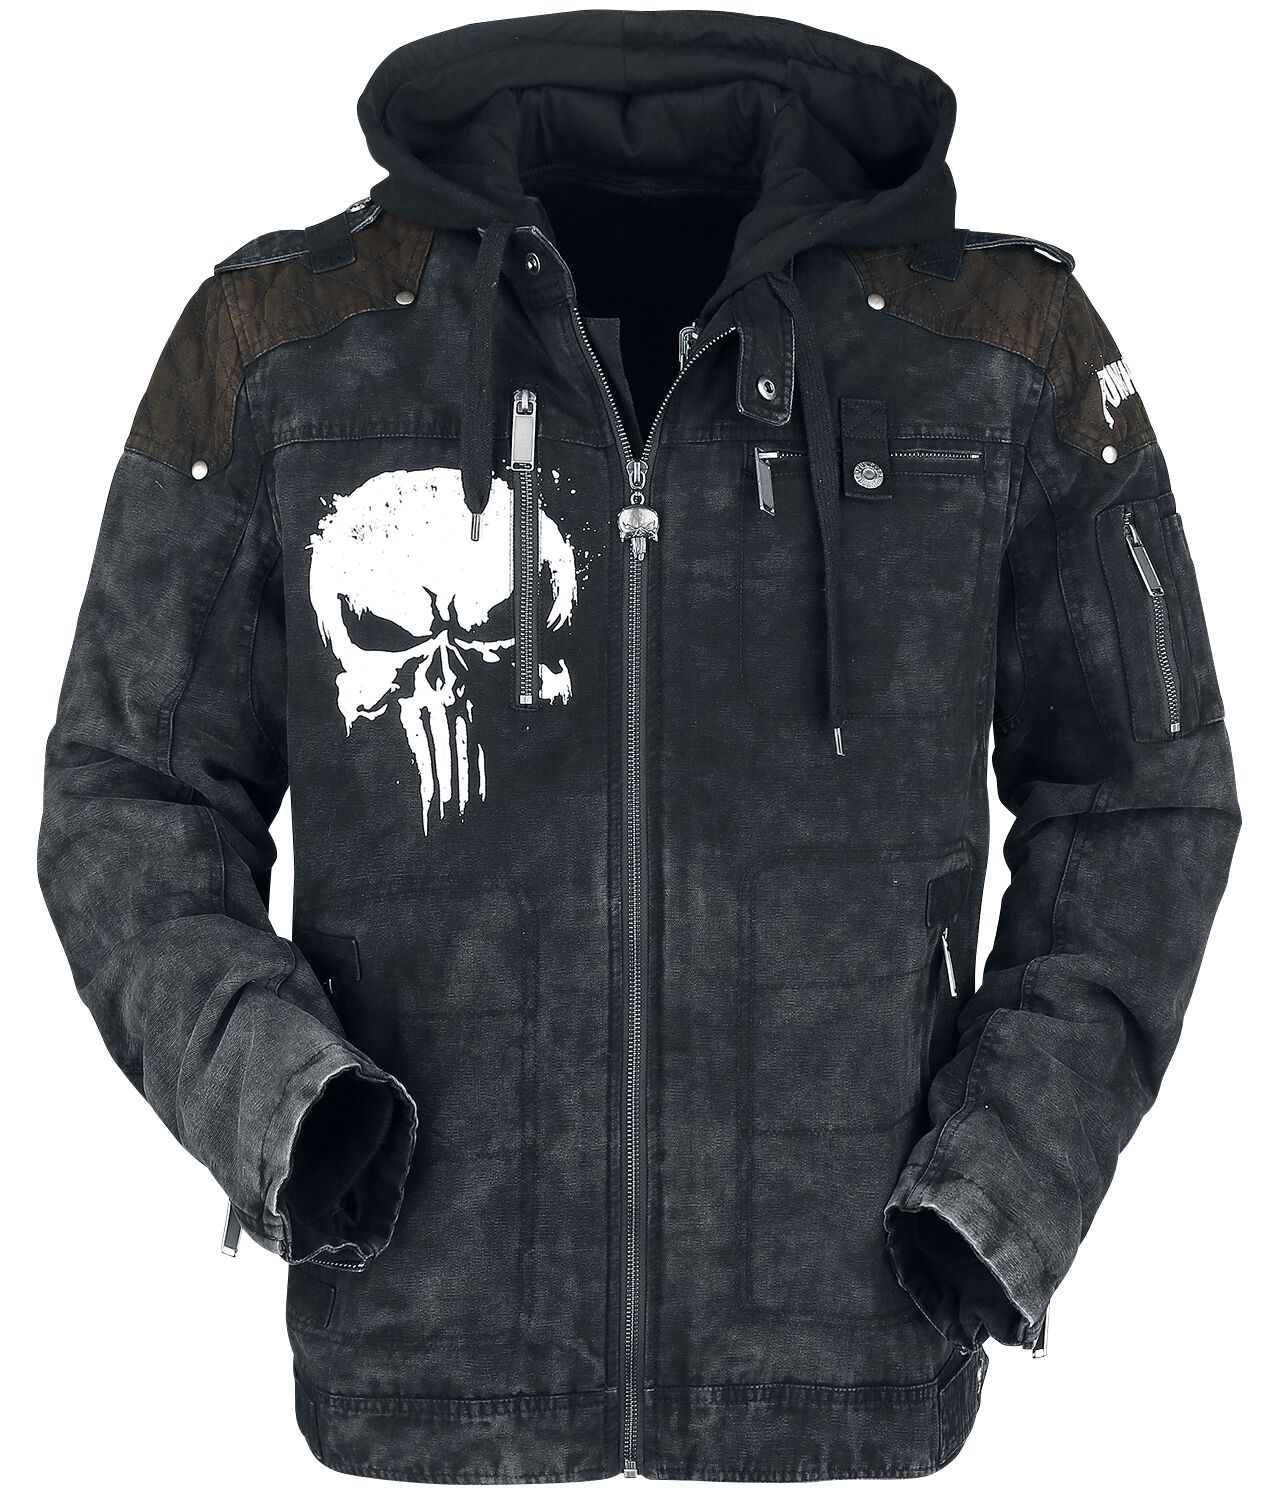 The Punisher - Marvel Winterjacke - Skull - S bis XXL - für Männer - Größe XXL - schwarz  - EMP exklusives Merchandise!